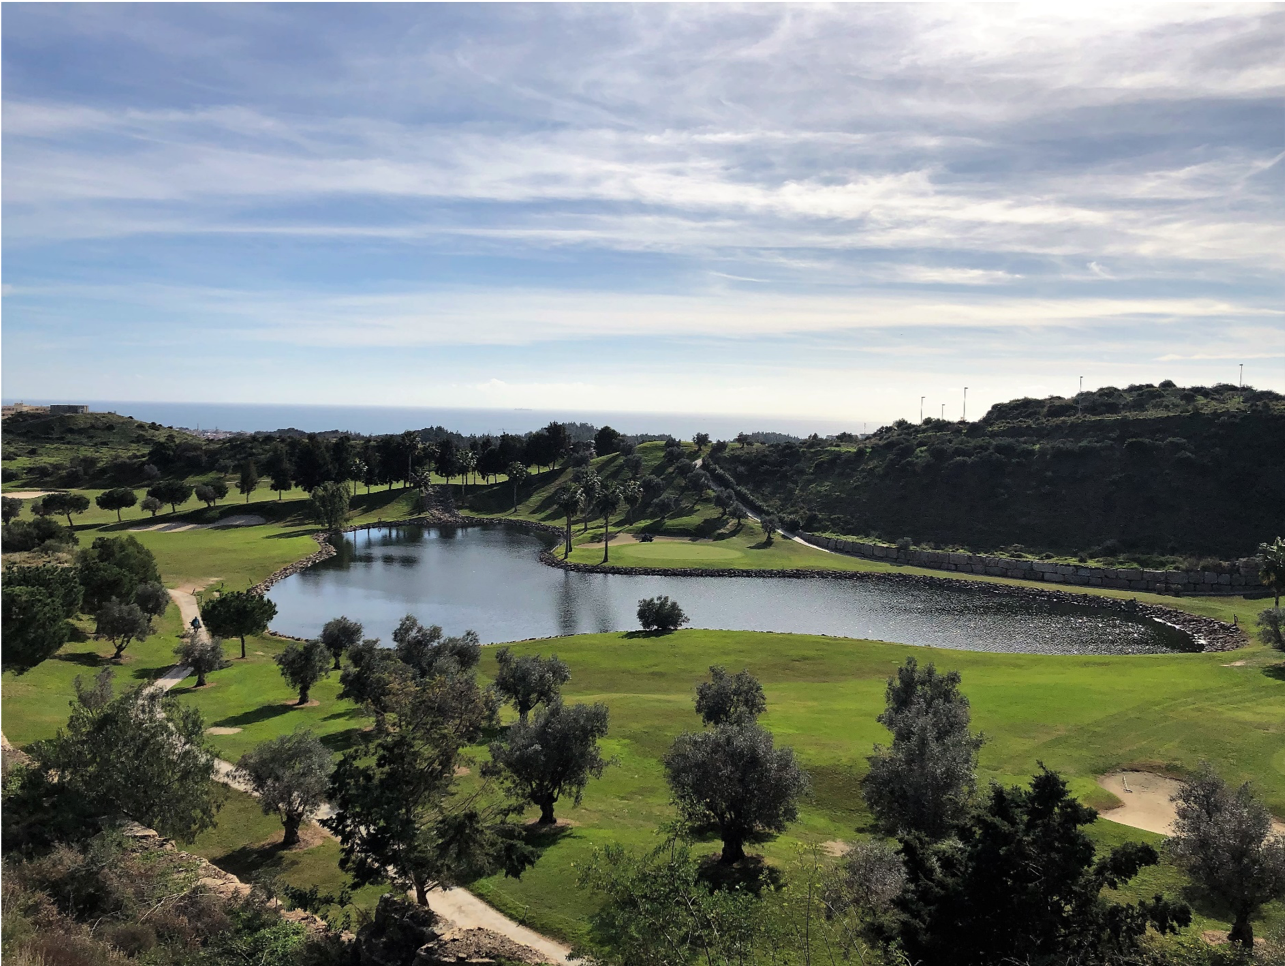 La Quinta de Cerrado: Exclusive frontline golf residential development in Mijas Costa. | Image 2